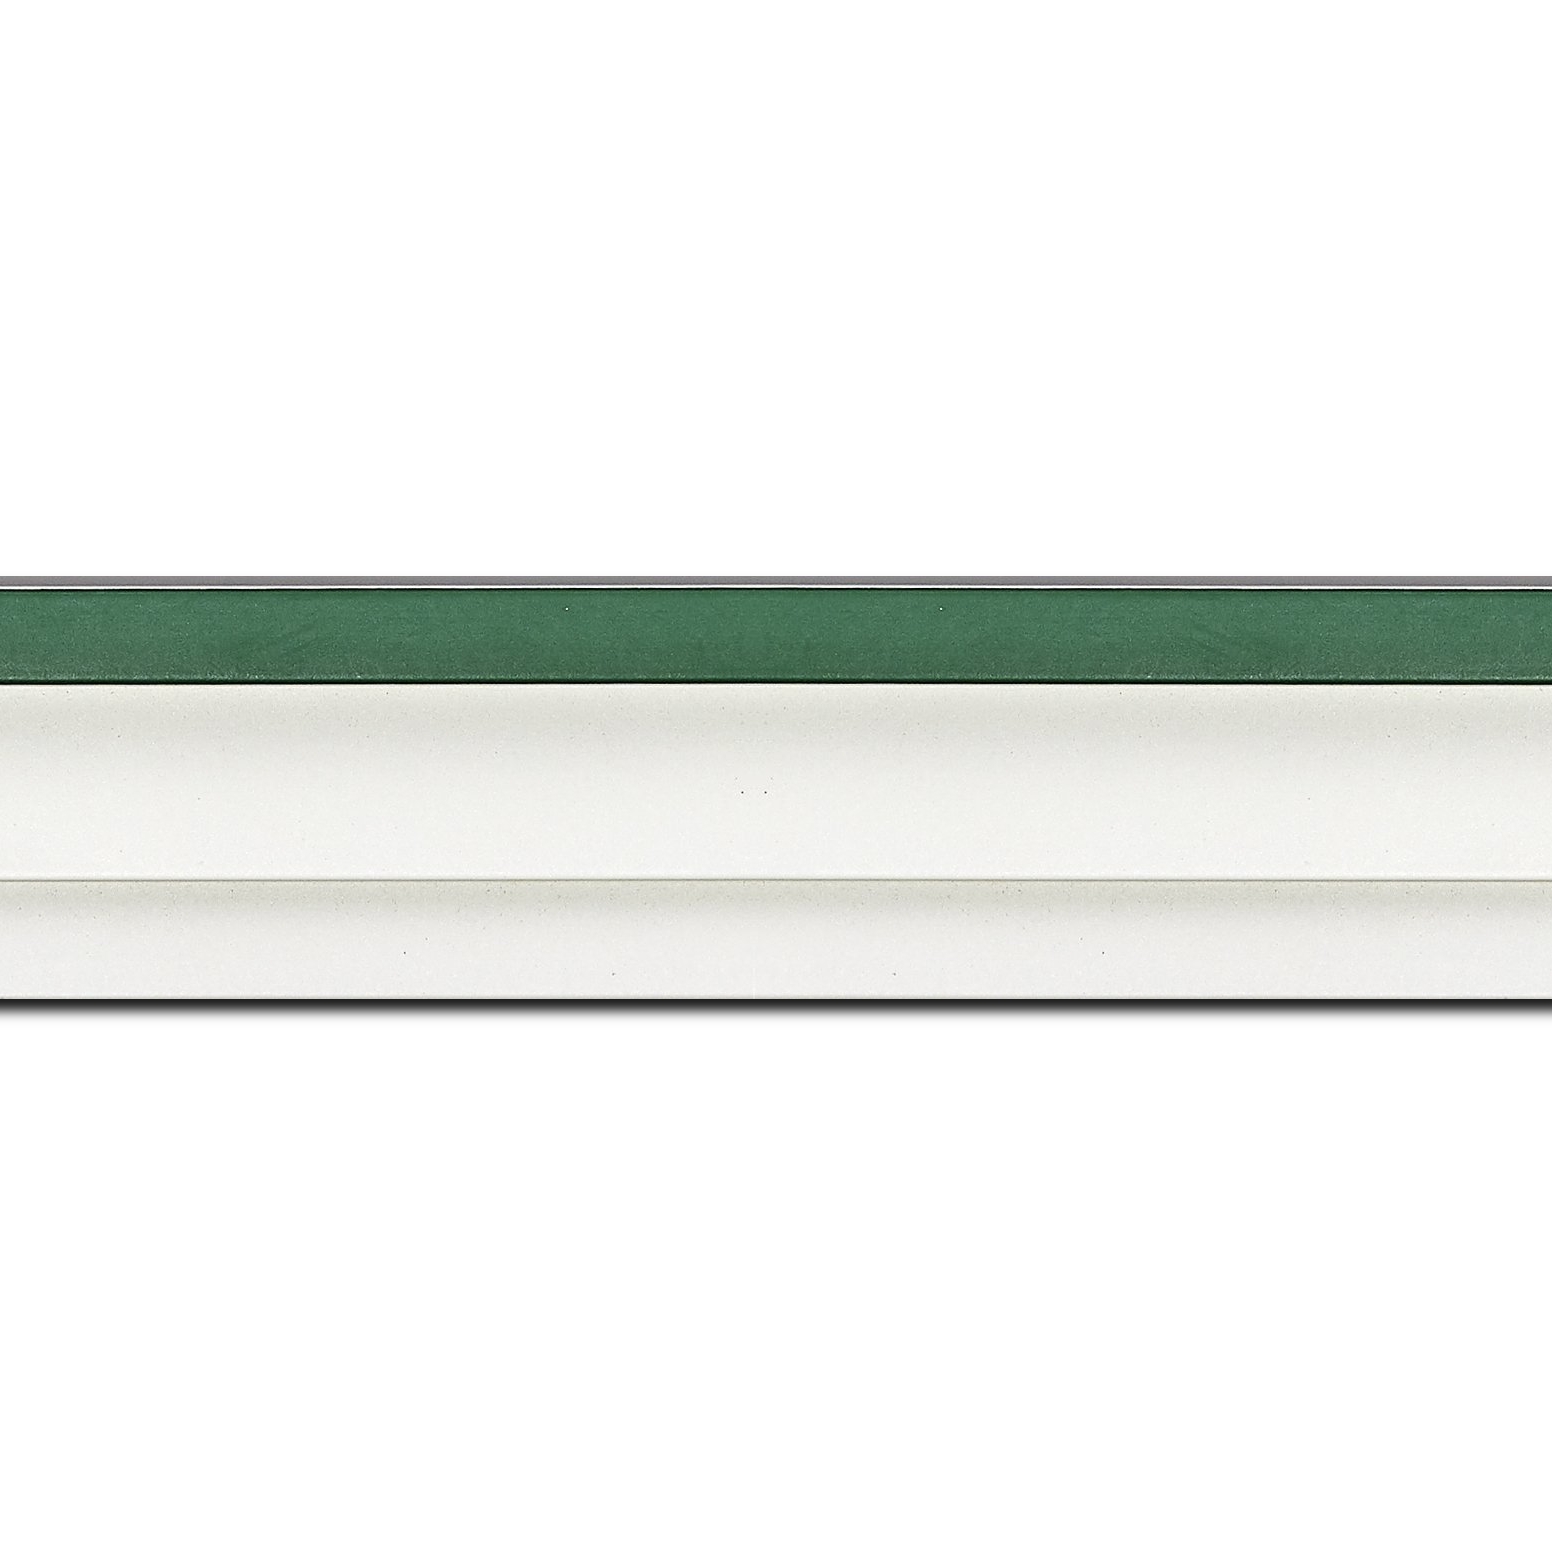 Caisse américaine pour peintures  americaine bois vert blanc — 60 x 120